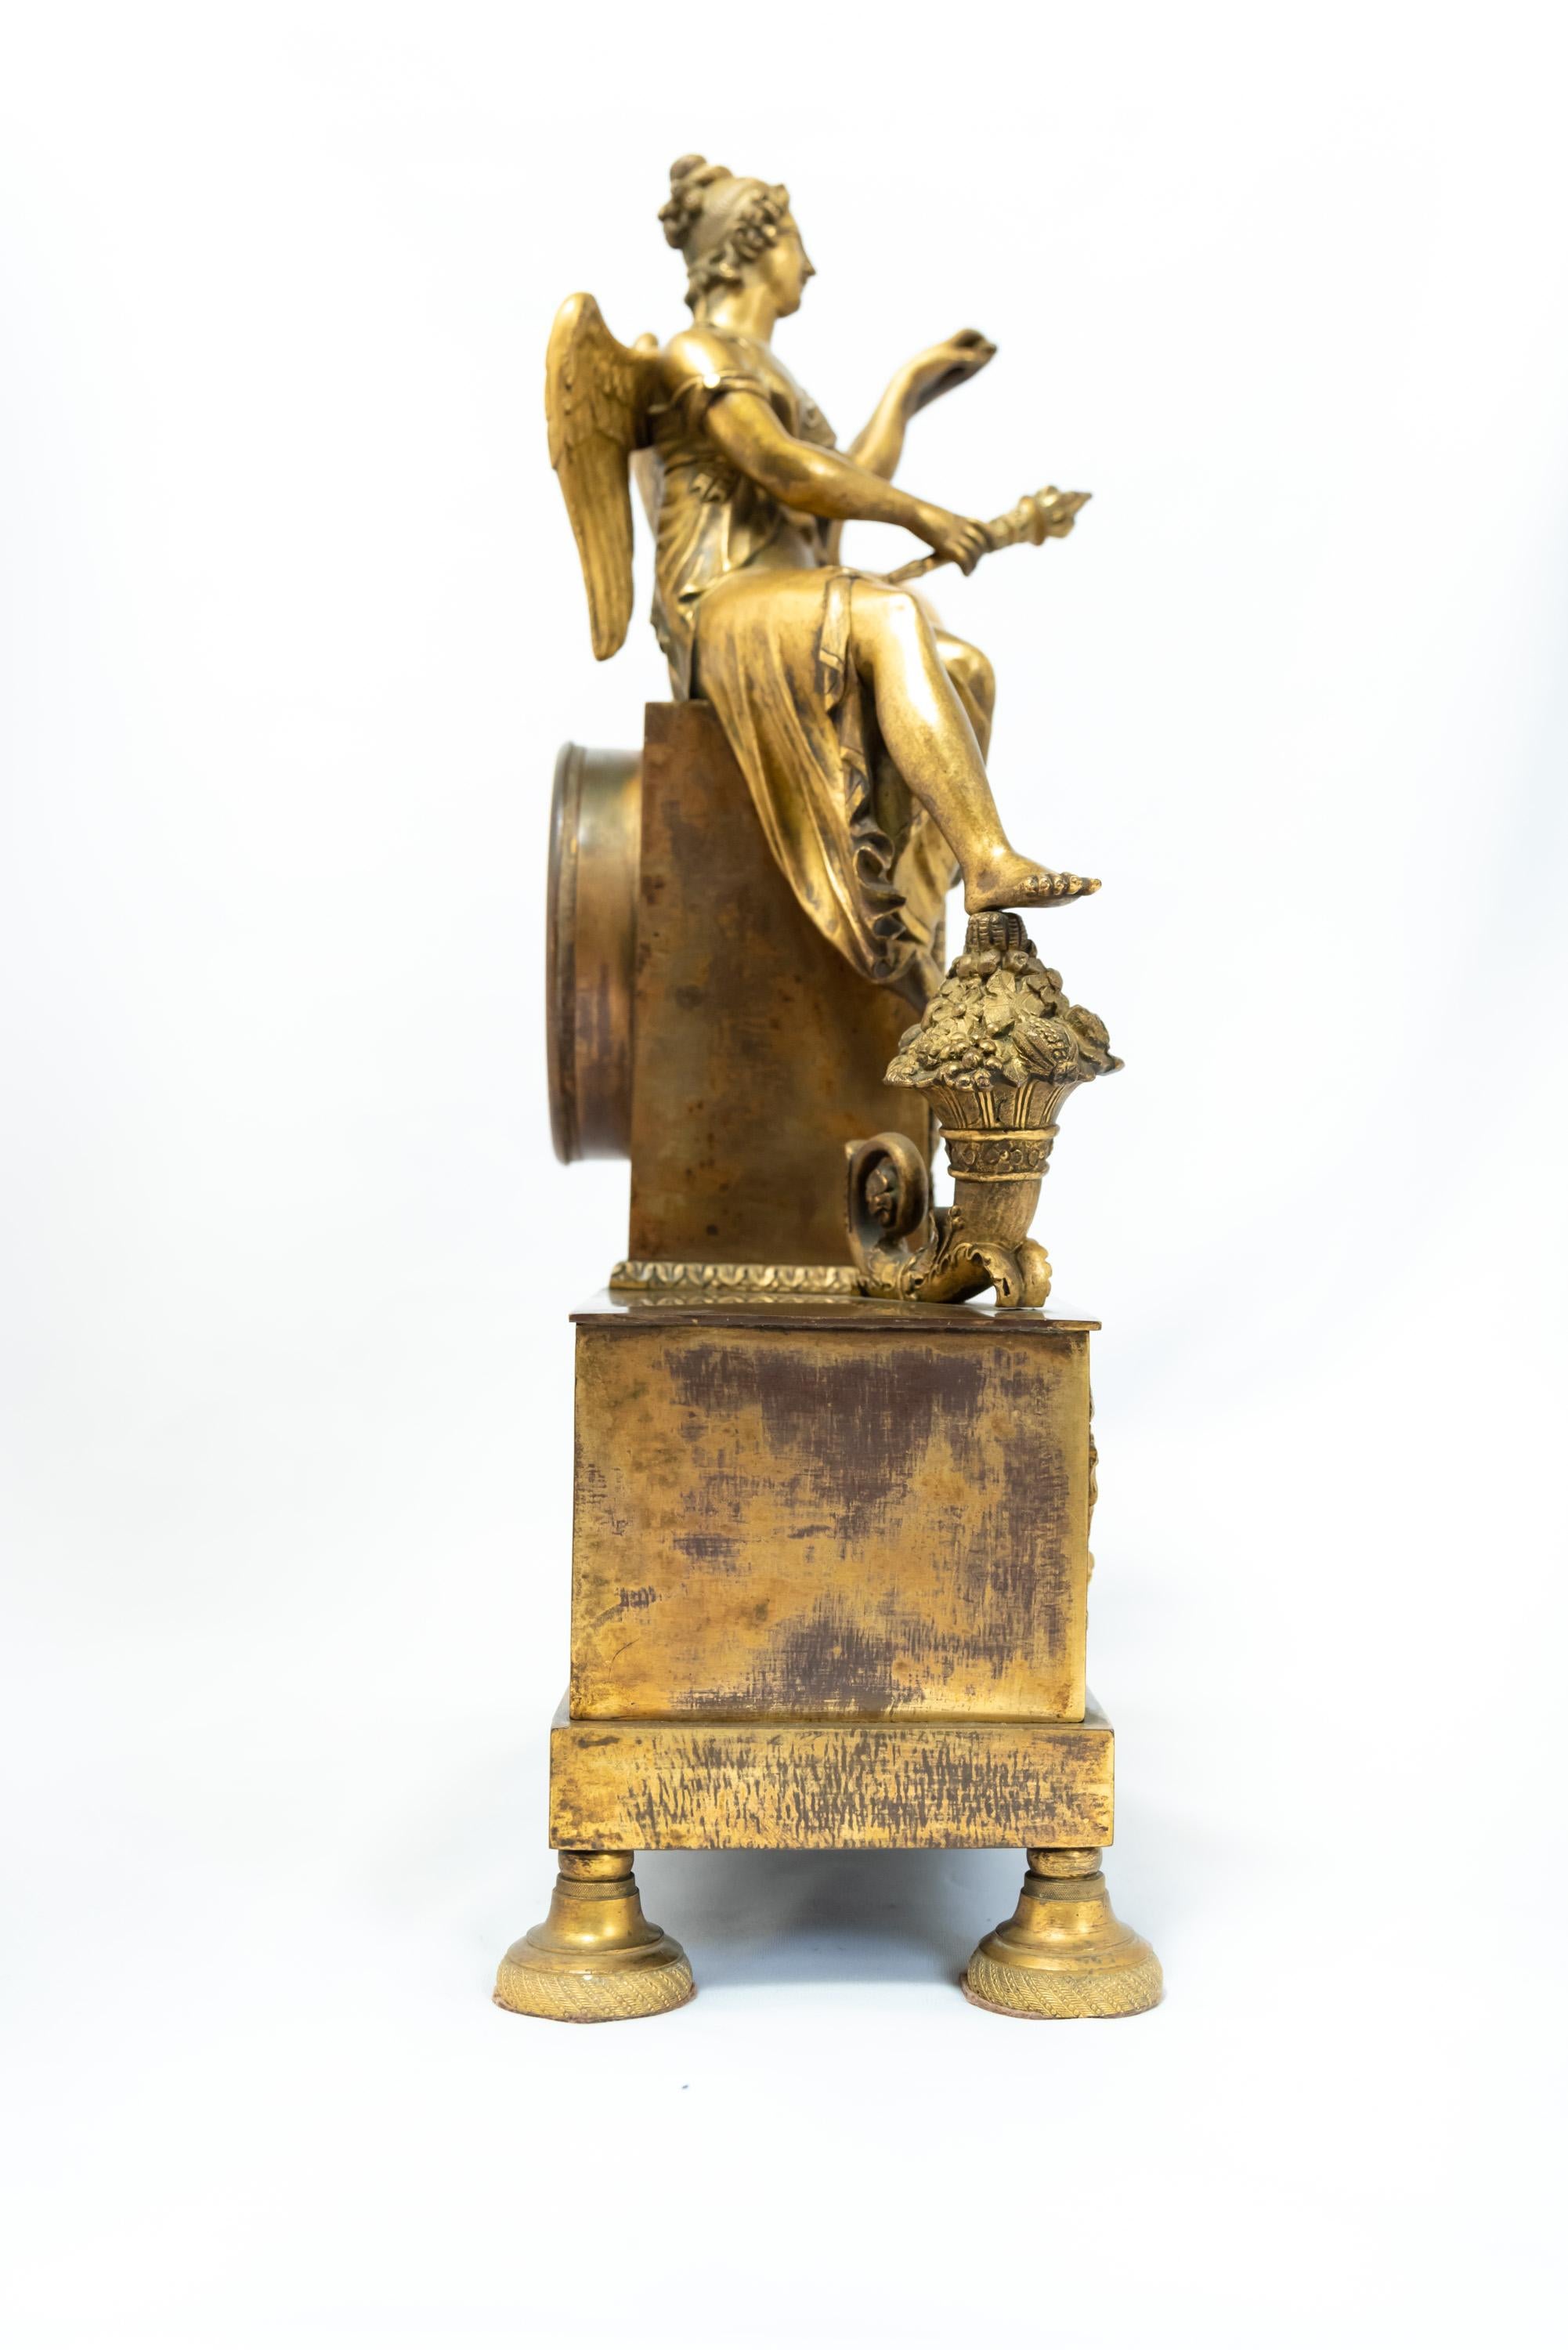 Pendule française en bronze doré représentant une figure féminine assise - Uranie, je suppose, à en juger par l'iconographie. L'ère de l'Empire, 1800-1815. La dorure présente des signes d'usure et le mécanisme à fil de soie argenté est dans un état